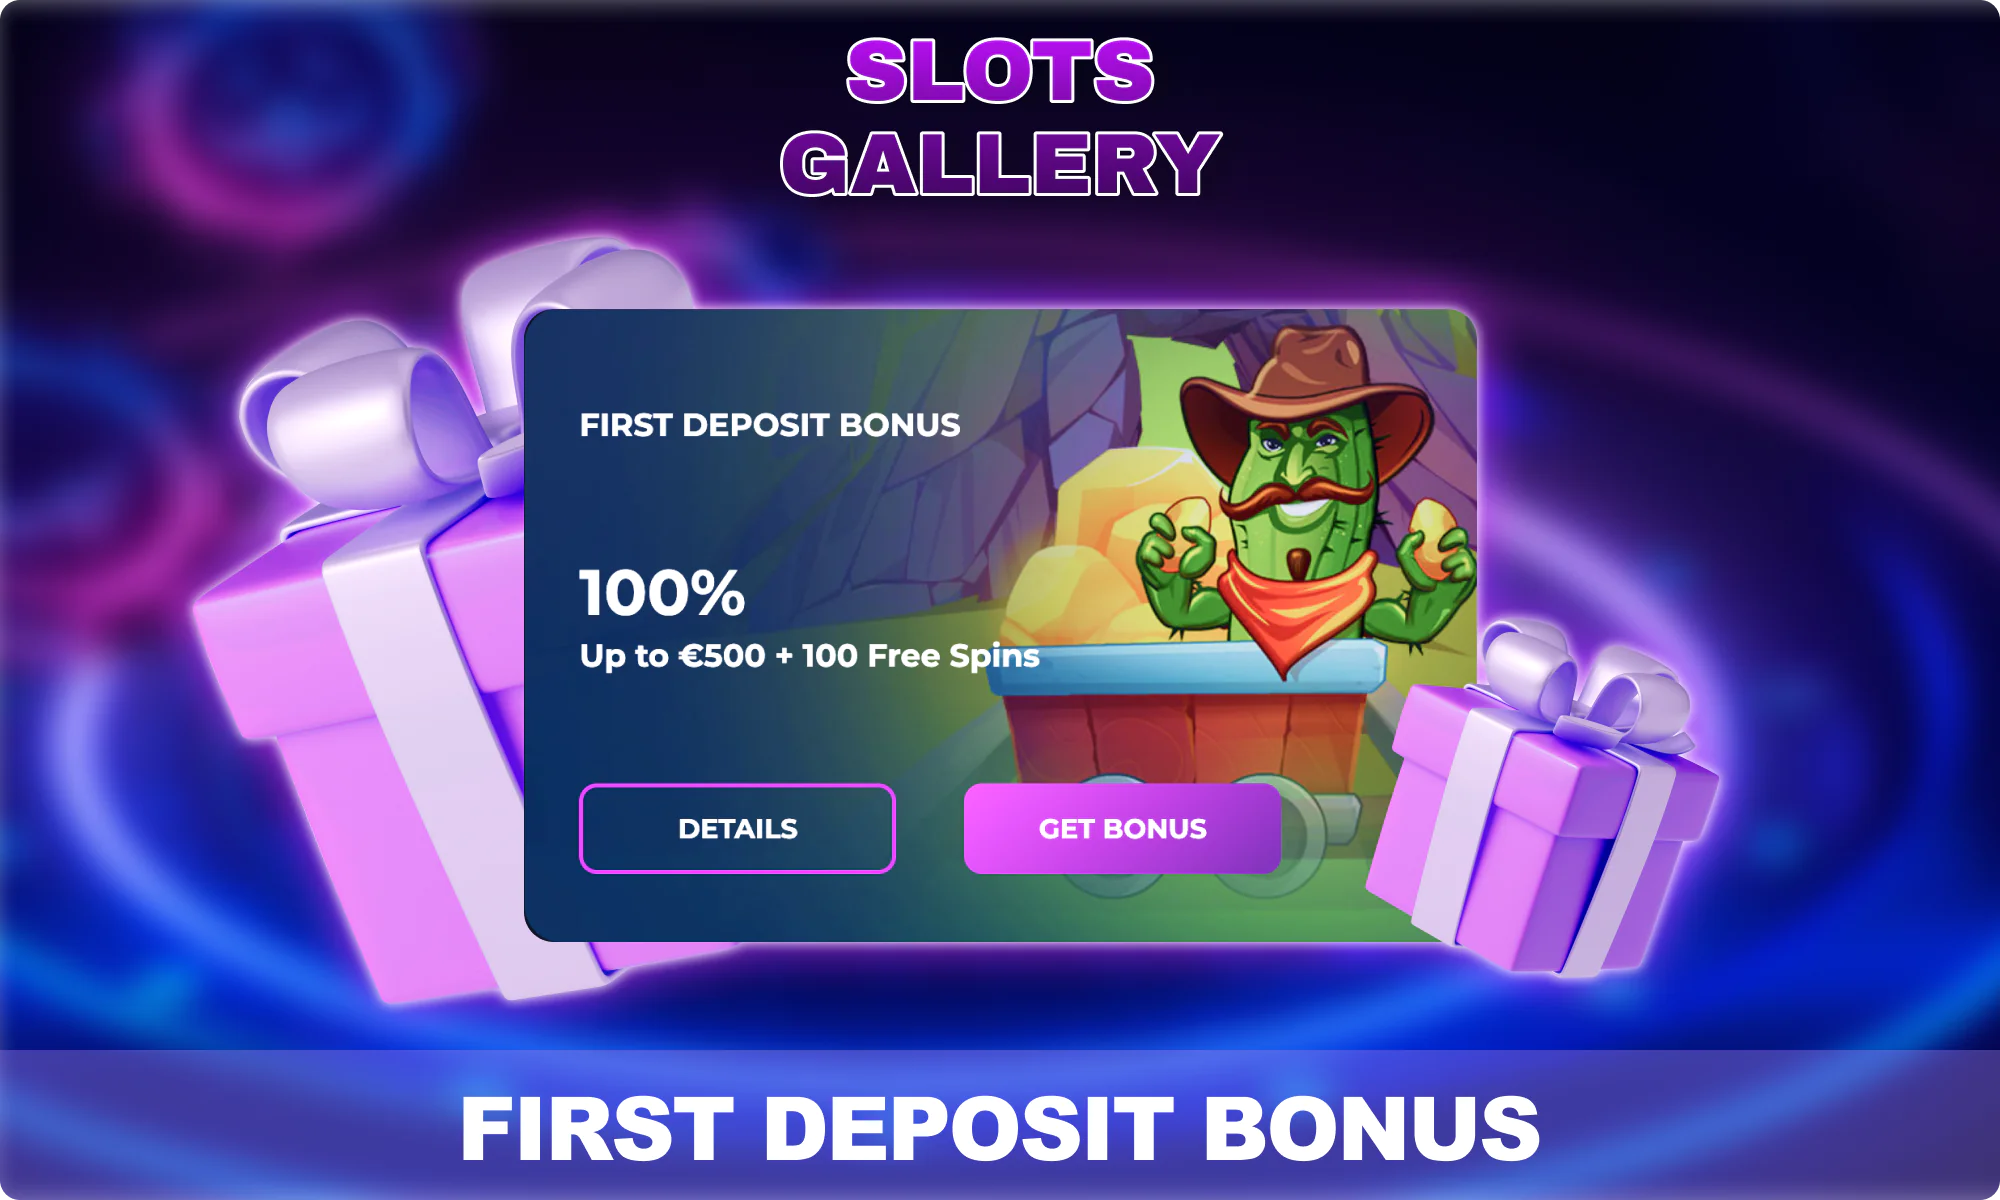 First Deposit Bonus - Slots Gallery